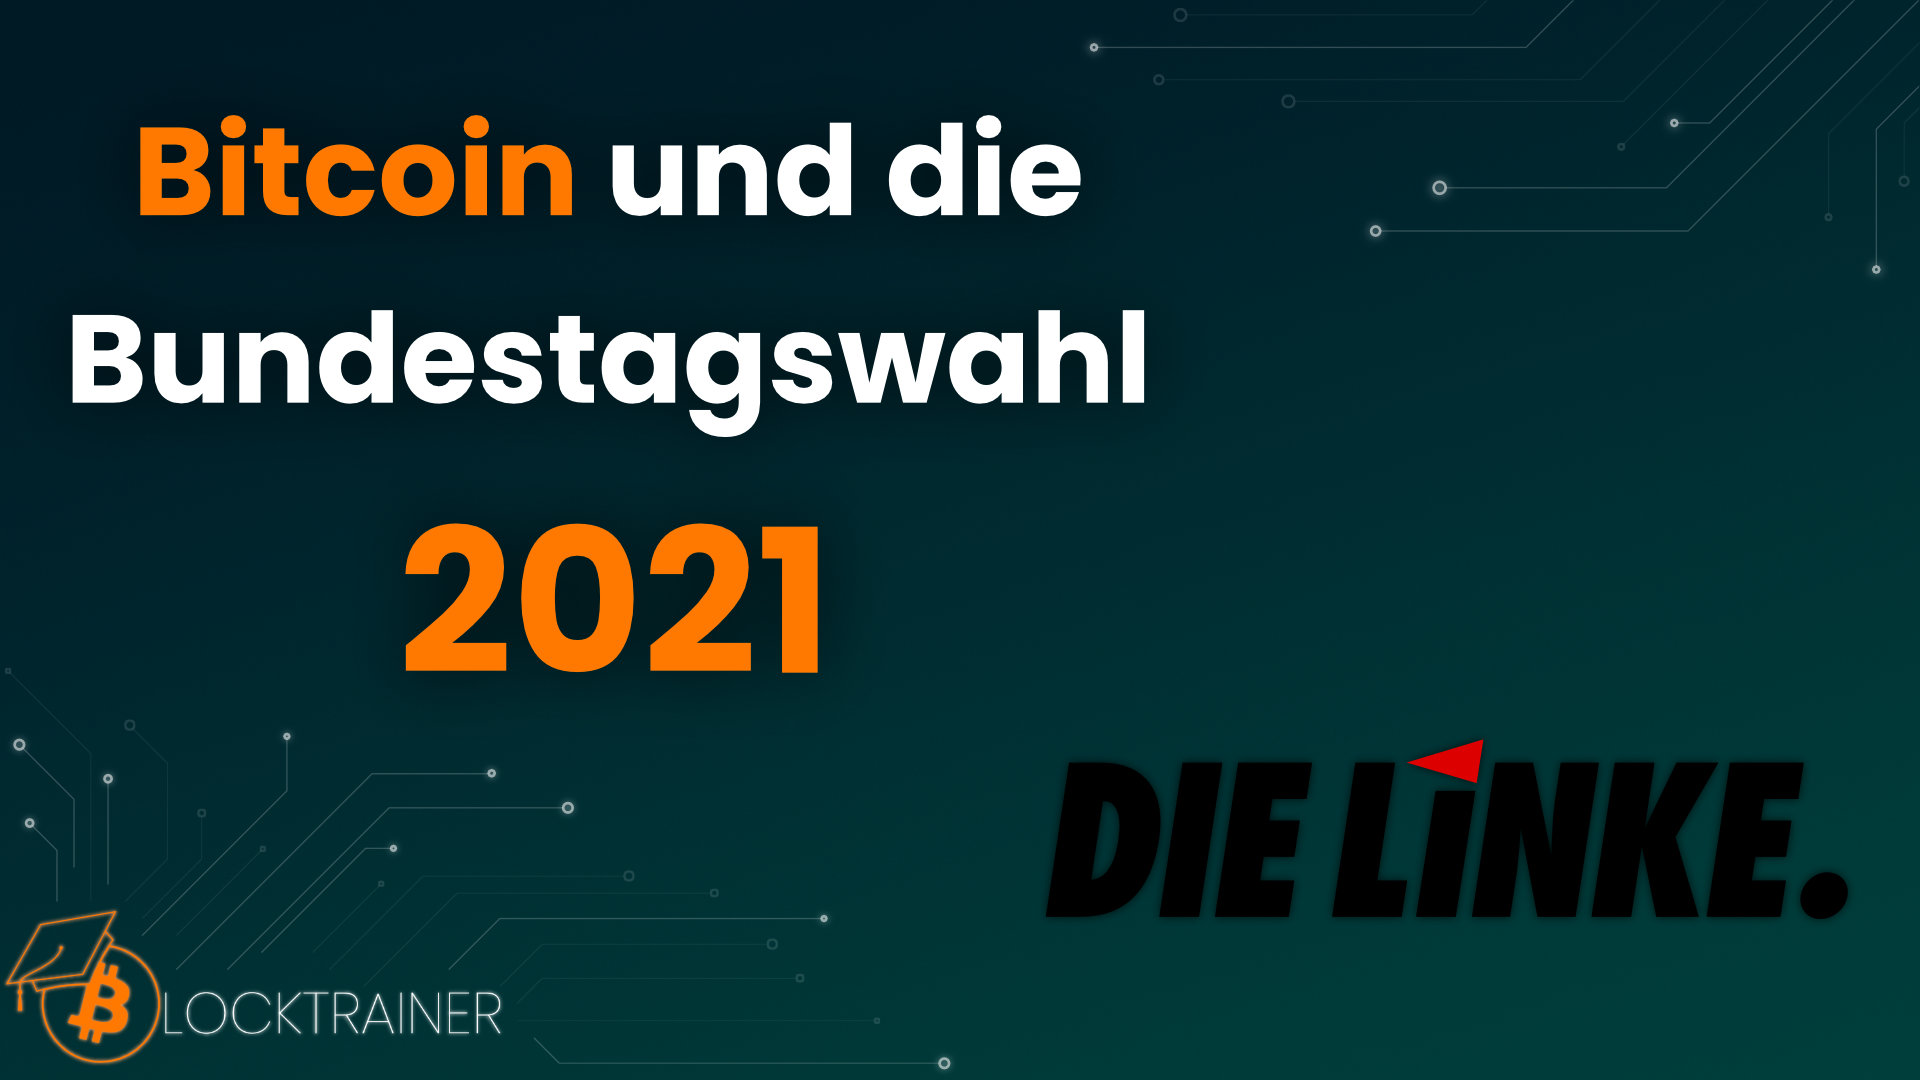 Bitcoin Bundestagswahl 2021 Die Linke